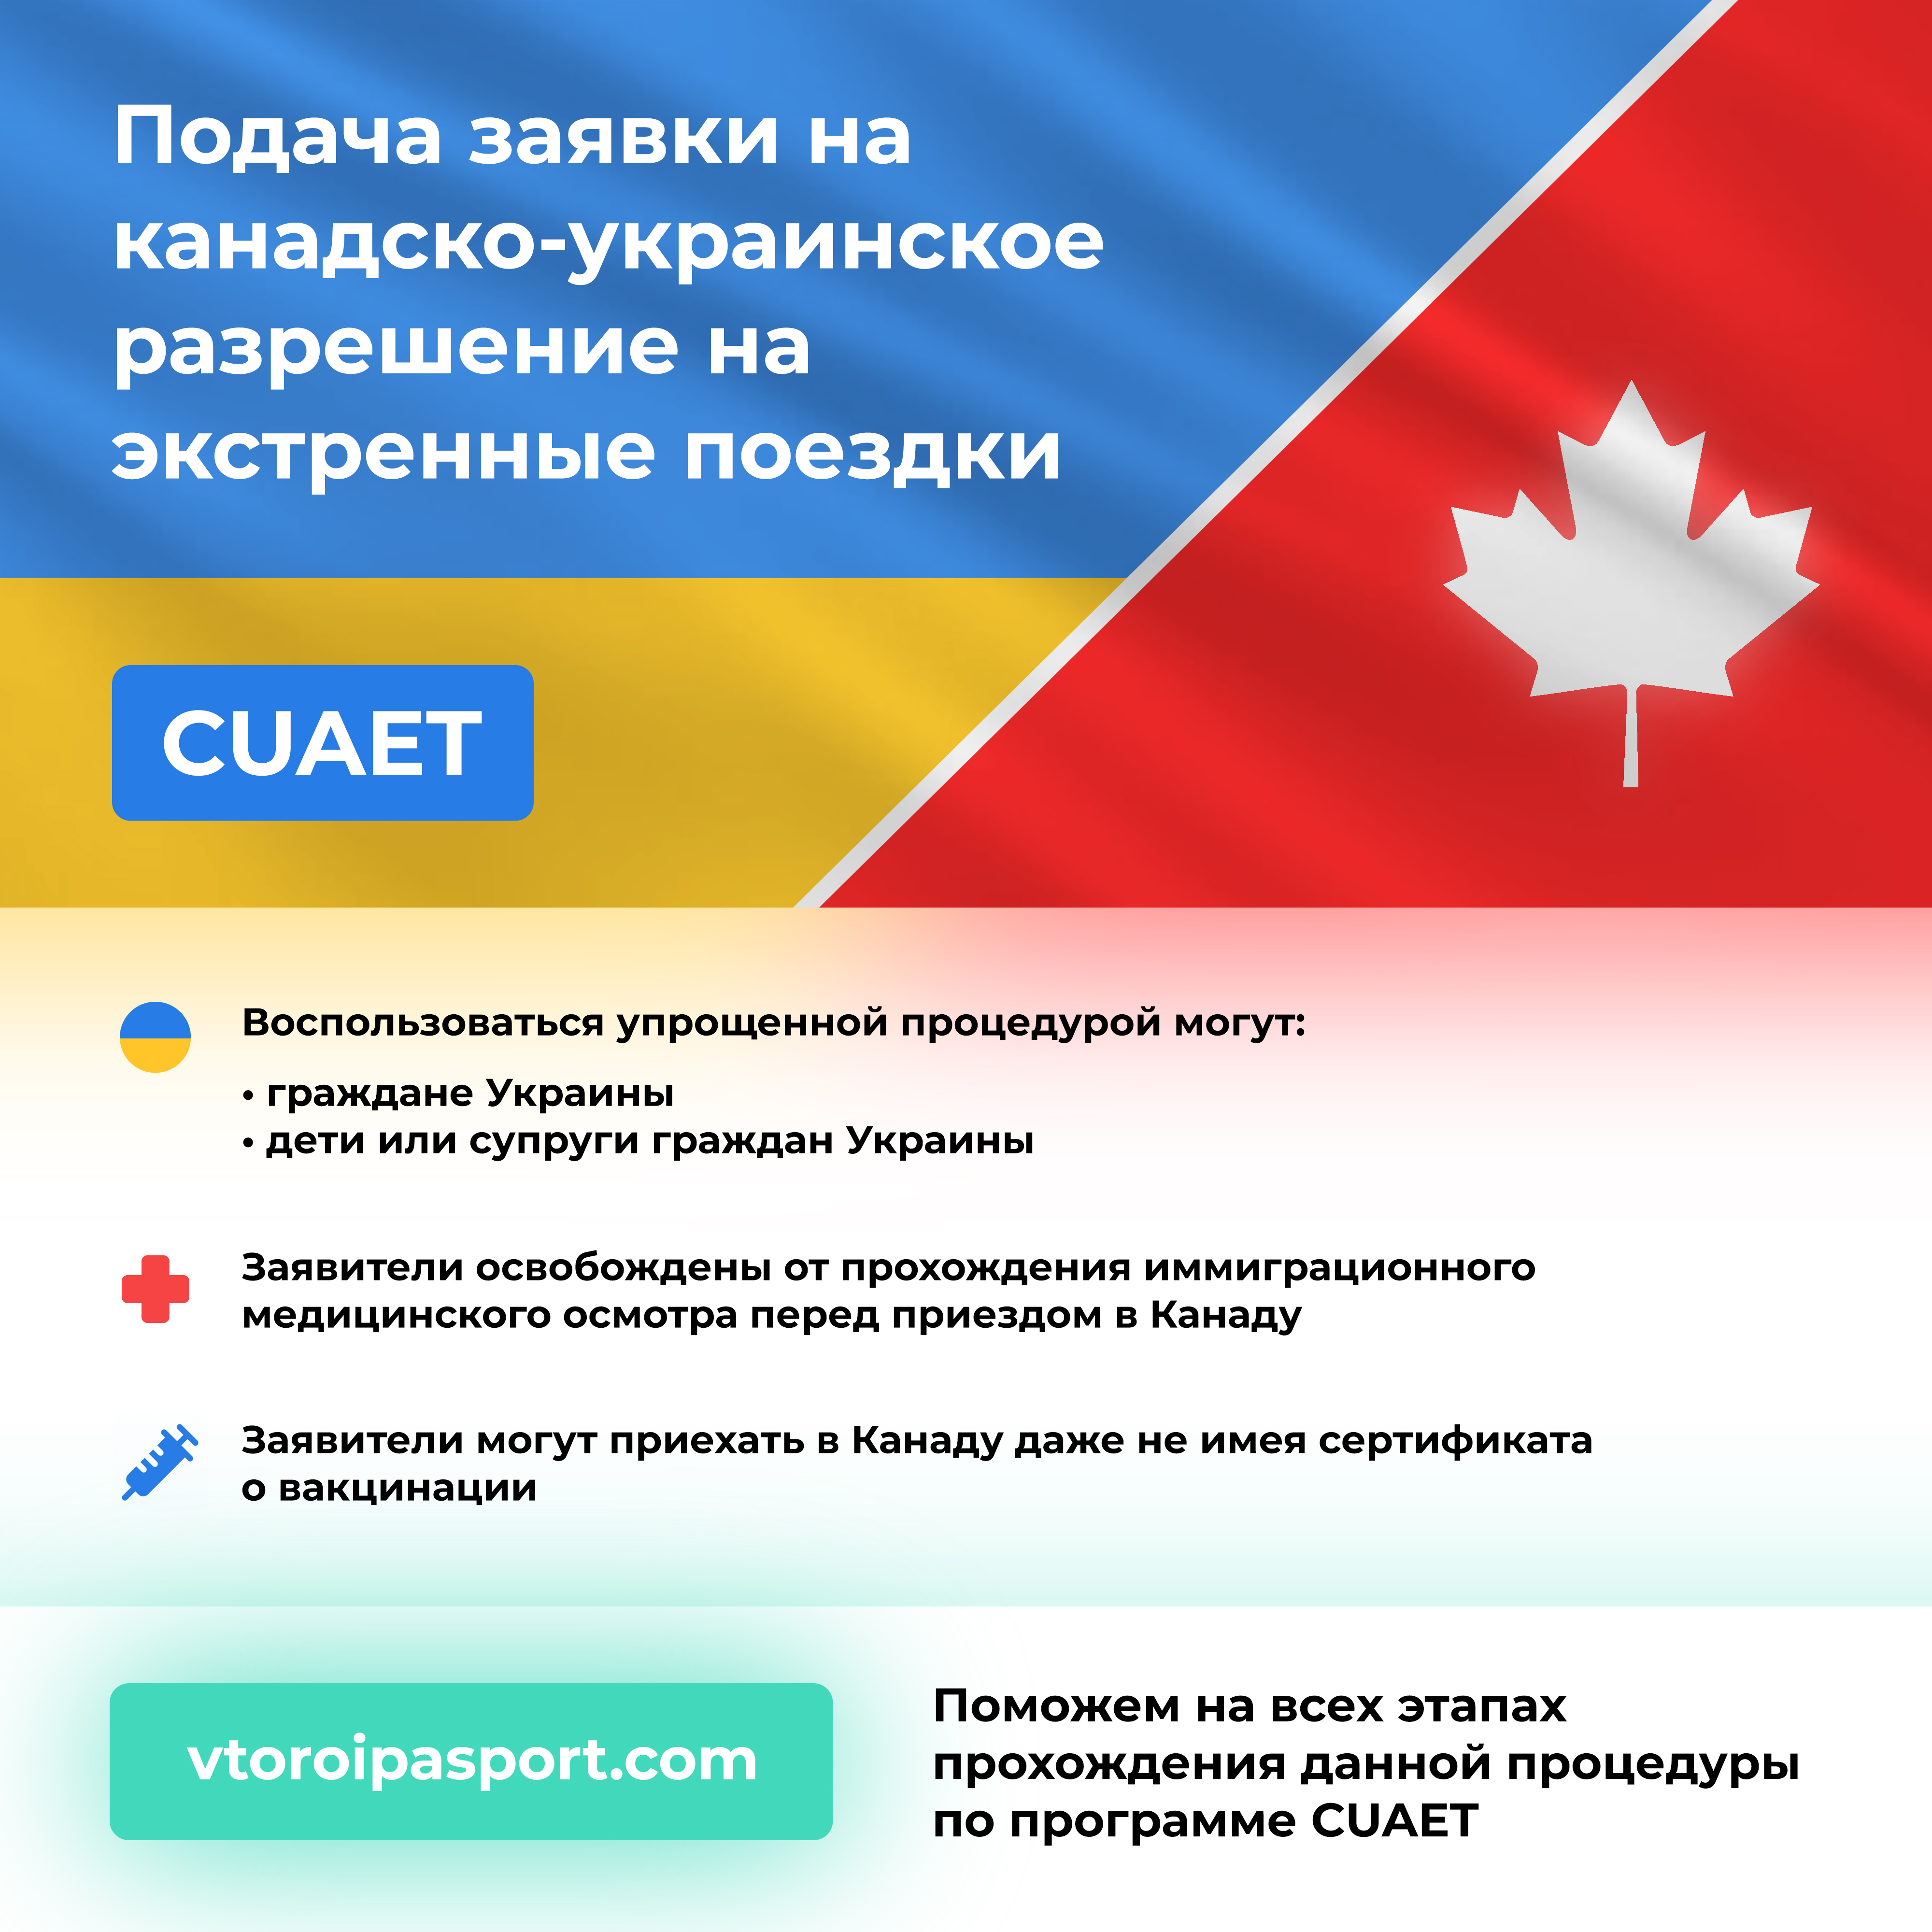 канадское разрешение на вьезд для украинцев